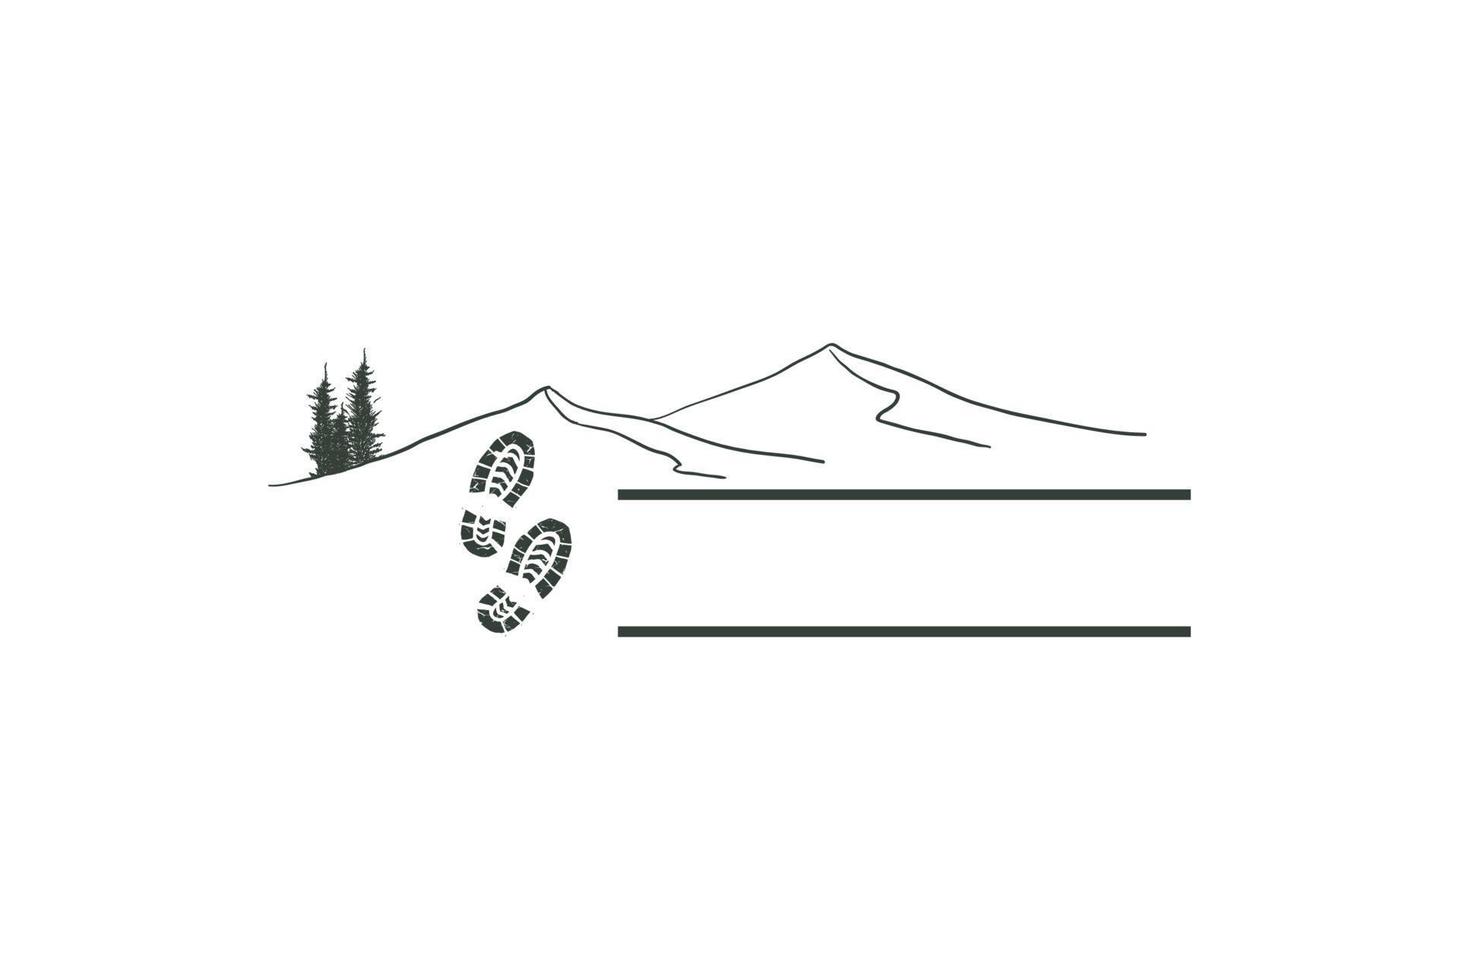 pin de montagne épinette à feuilles persistantes conifère sapin mélèze cyprès avec empreinte de chaussure pour la randonnée création de logo d'aventure de camp vecteur